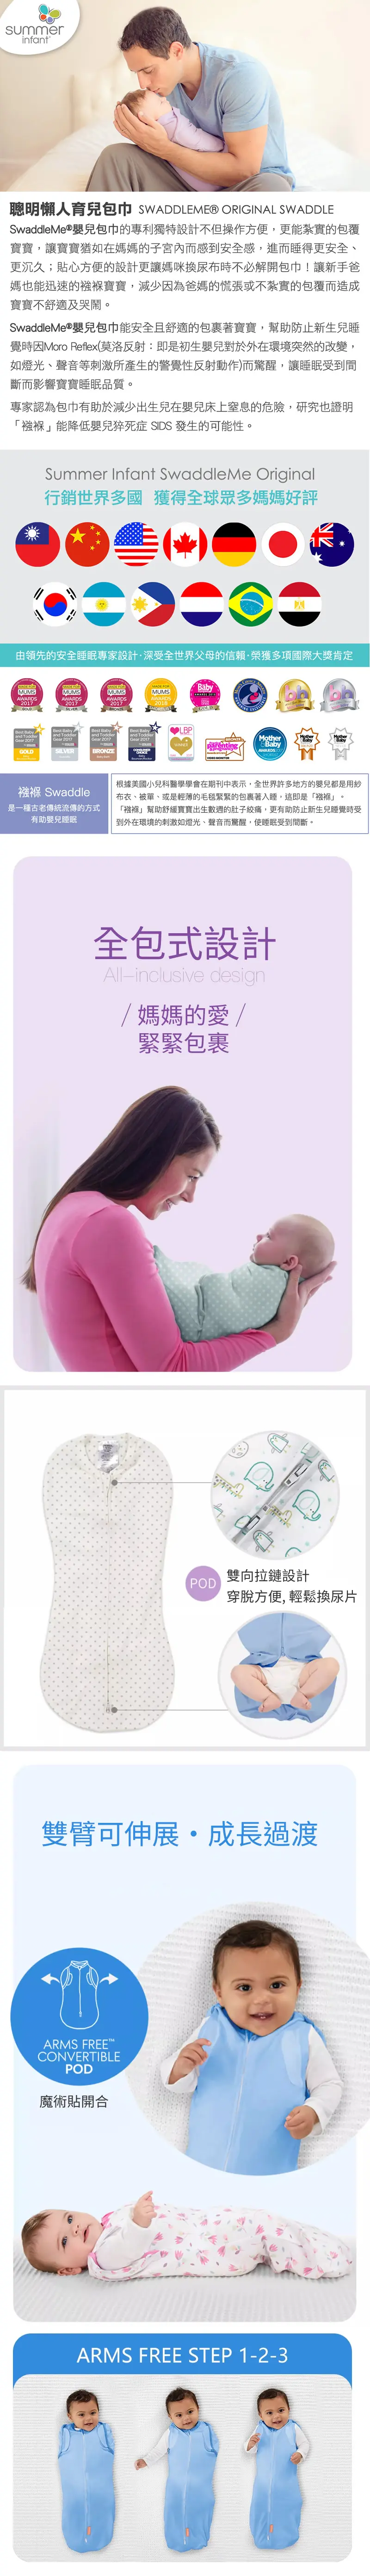 Summer Infant SwaddleMe Pod 嬰兒包巾(可轉換型)